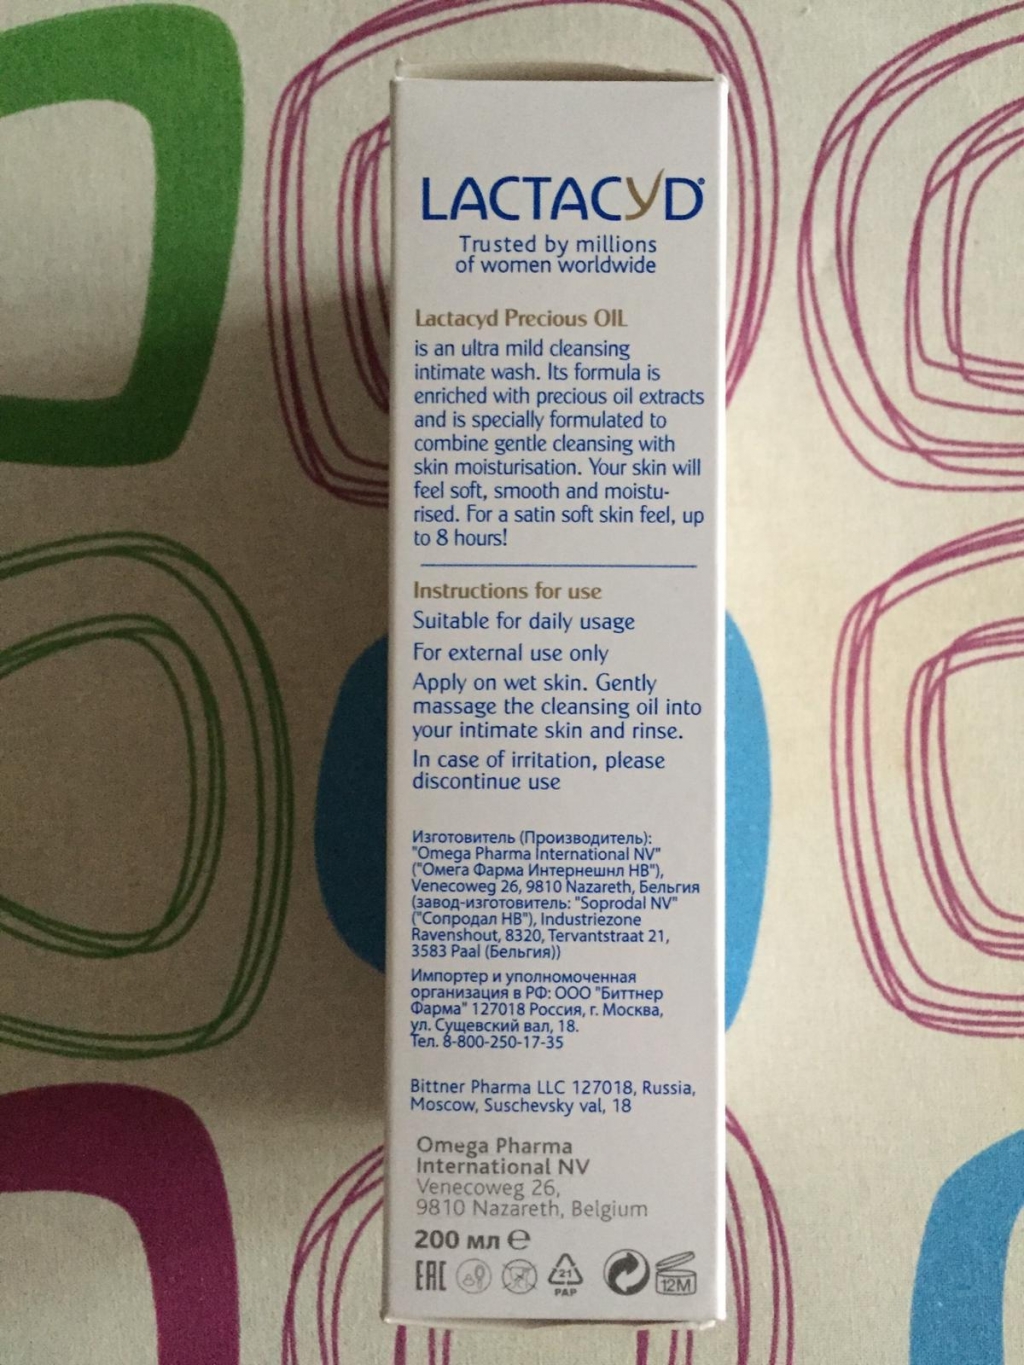 Lactacyd Лактацид Премиальное Масло - Обалденное масло